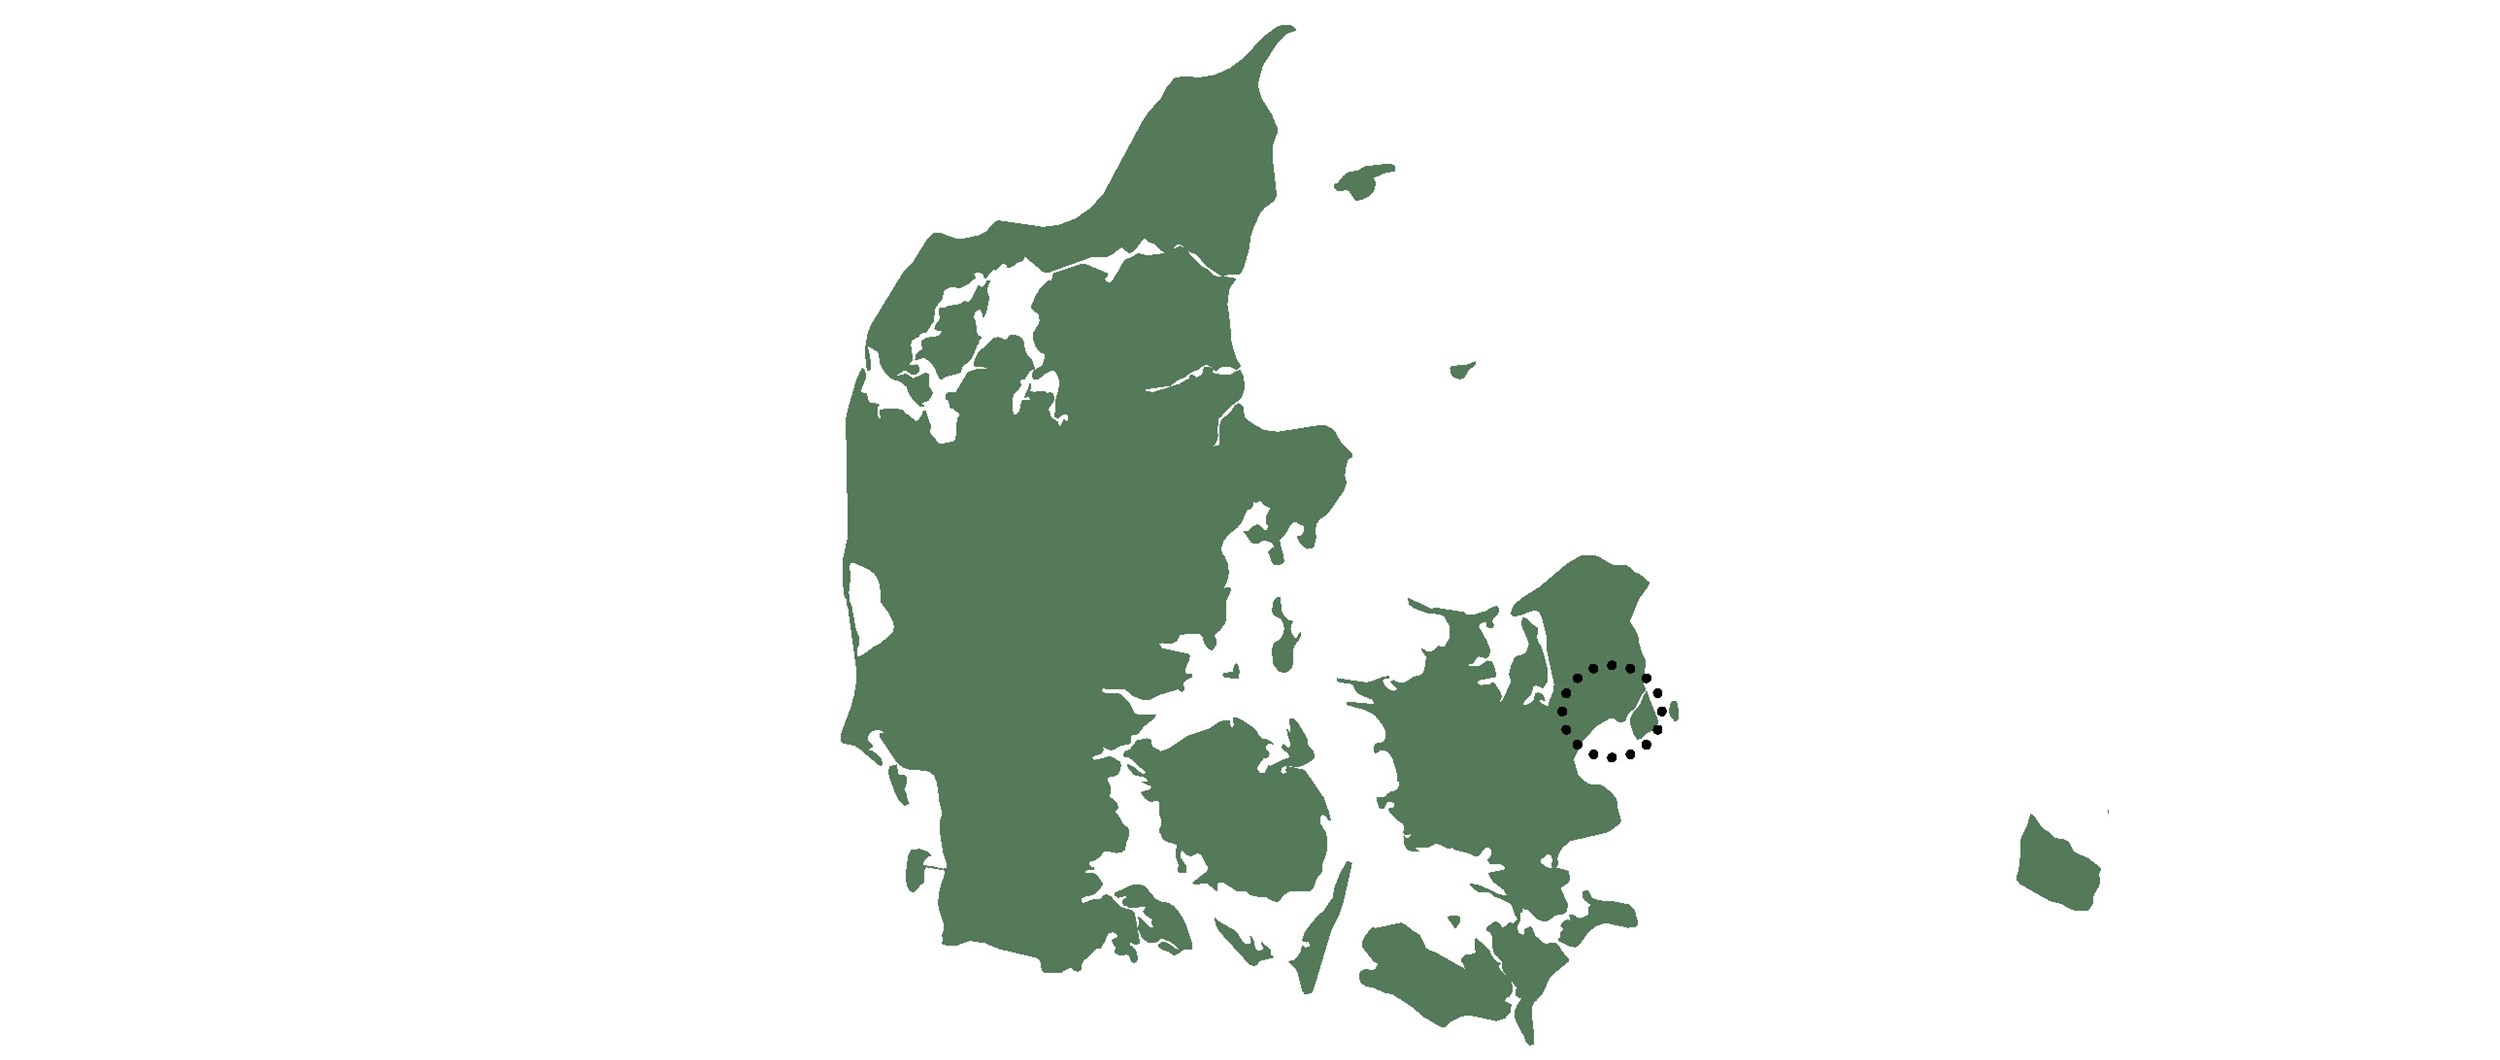 Projektet er beliggende i Hvidovre, en forstad til København med godt 53500 indbyggere.